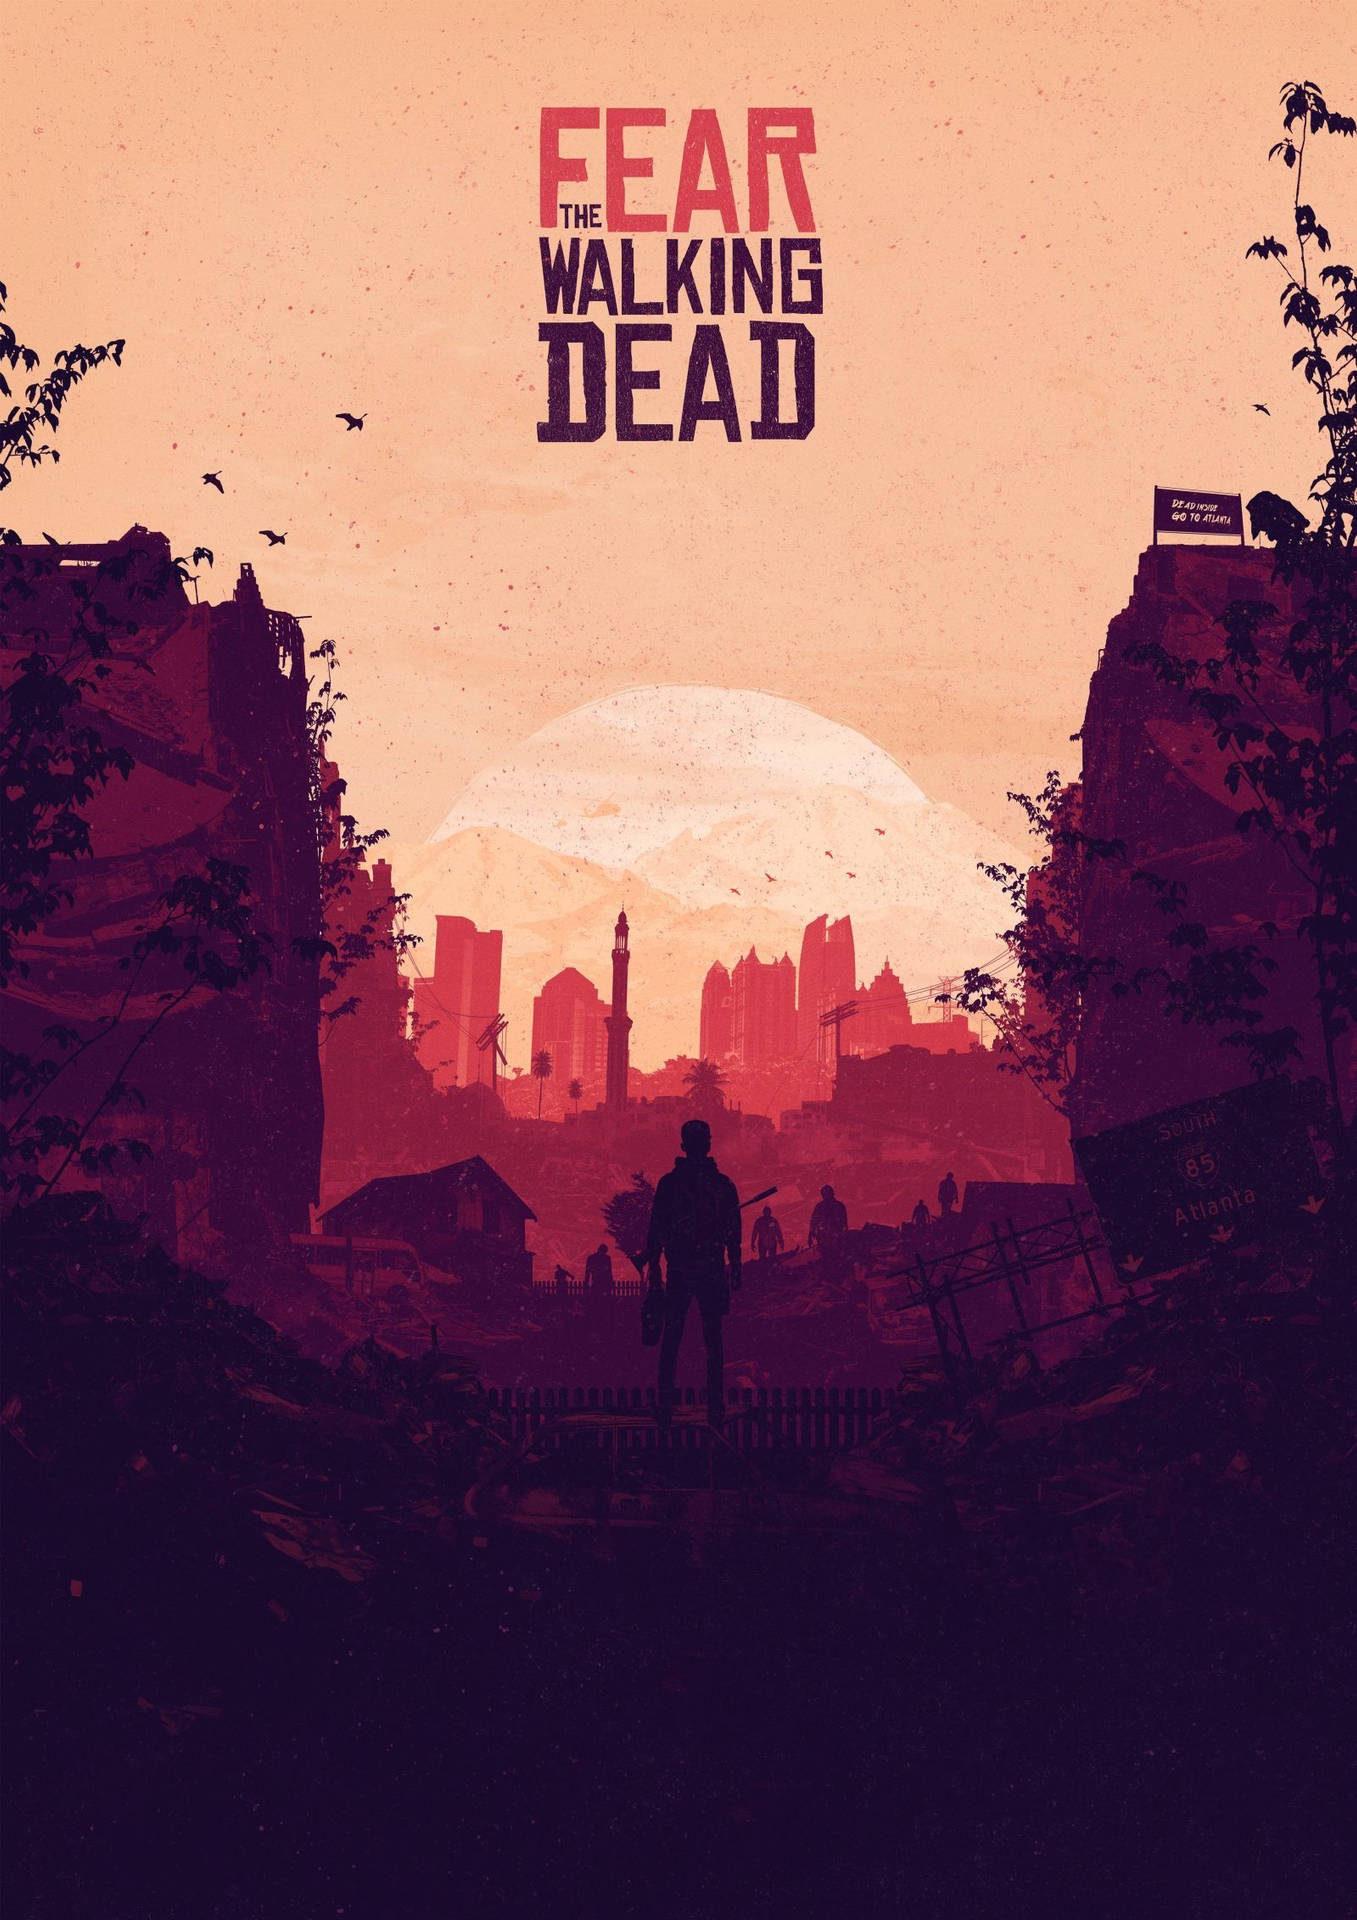 Fear The Walking Dead Aesthetic Poster Wallpaper